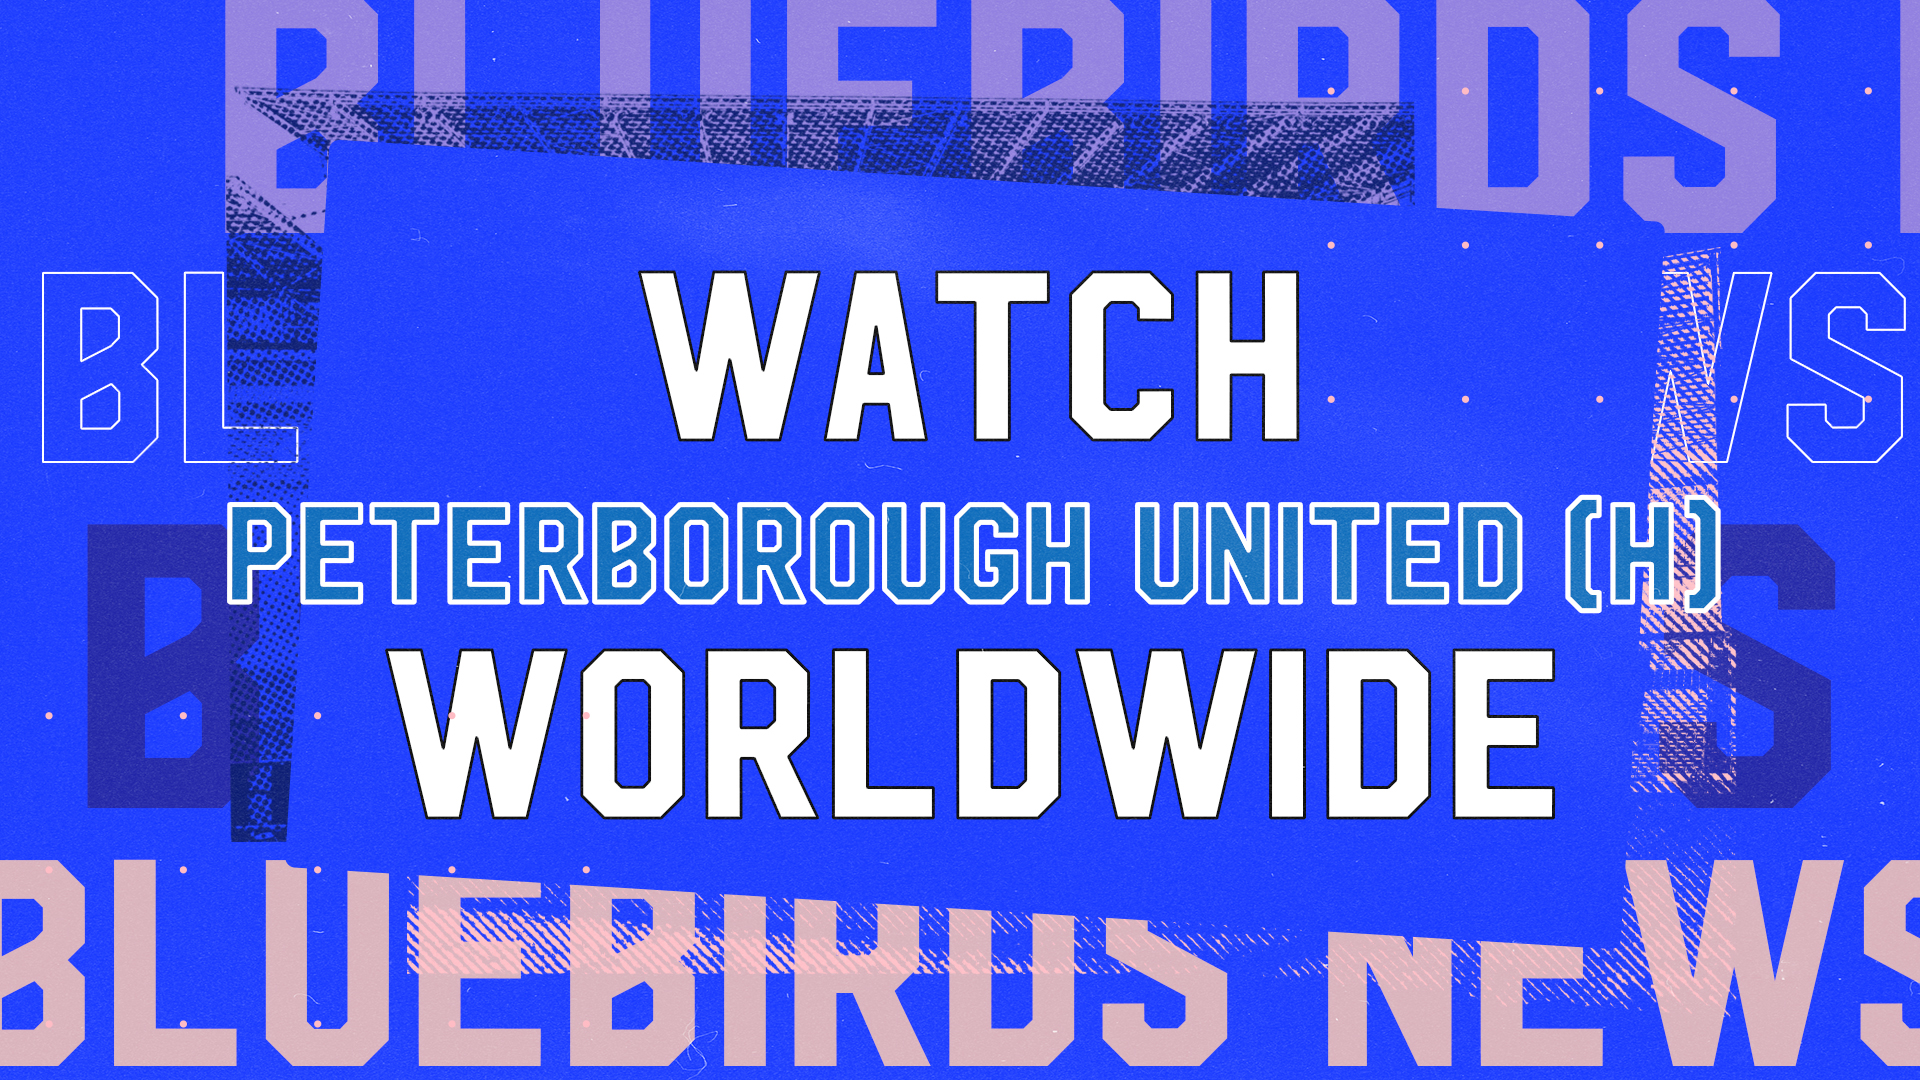 Peterborough United cctv